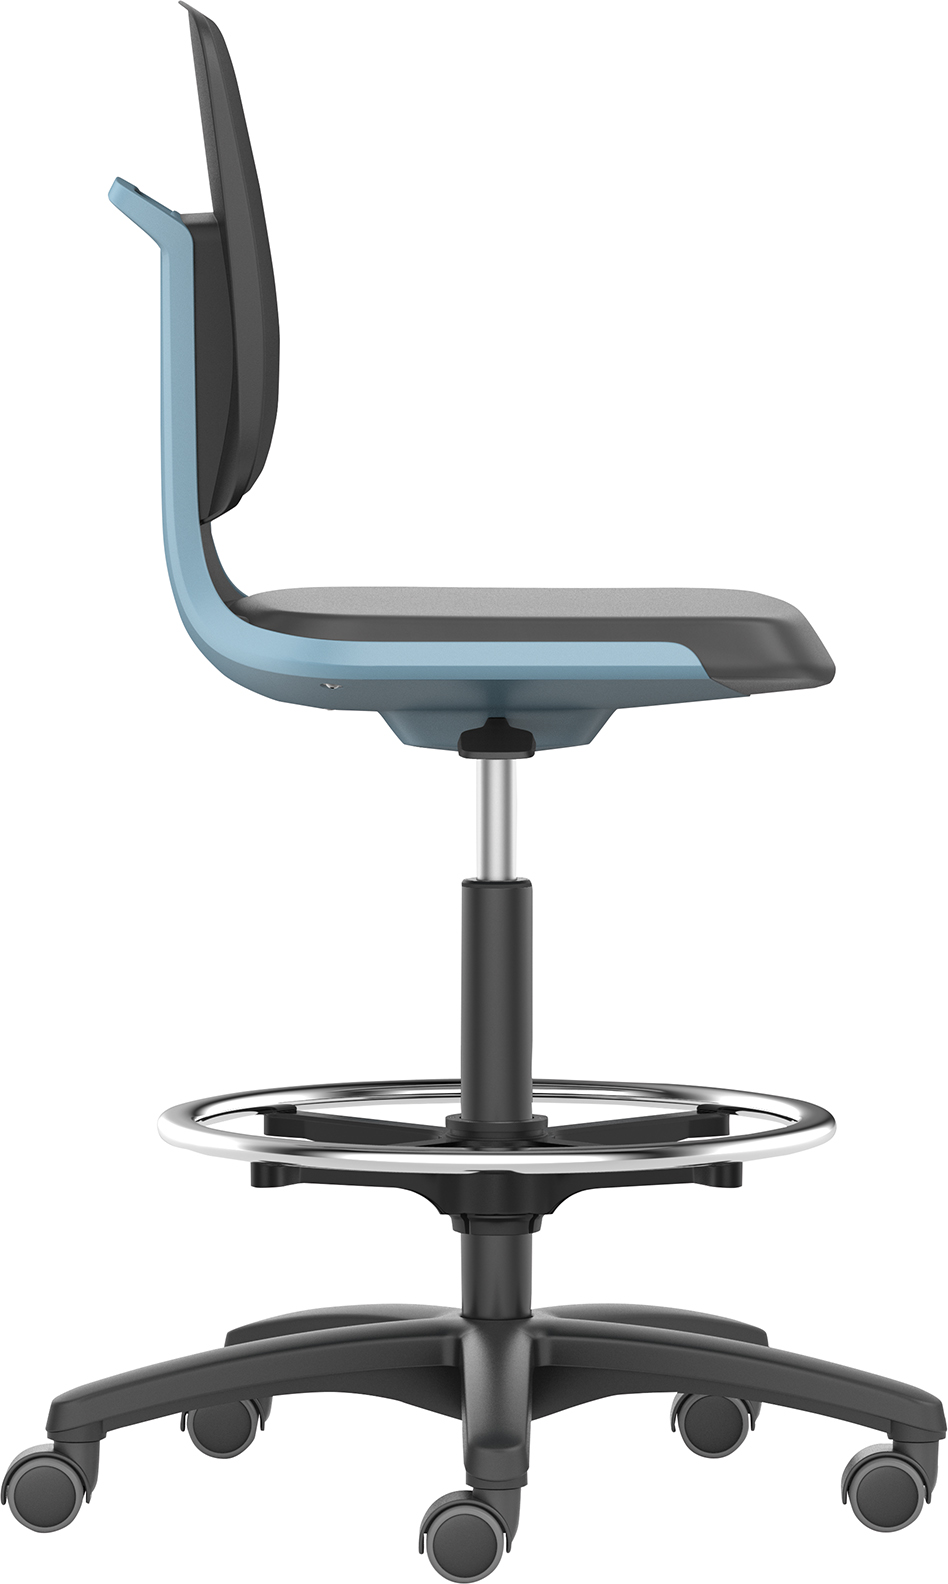 Bild von Bimos Arbeitsstuhl Labsit 4, K-Leder blau Sitzhöhe 560-810 mm